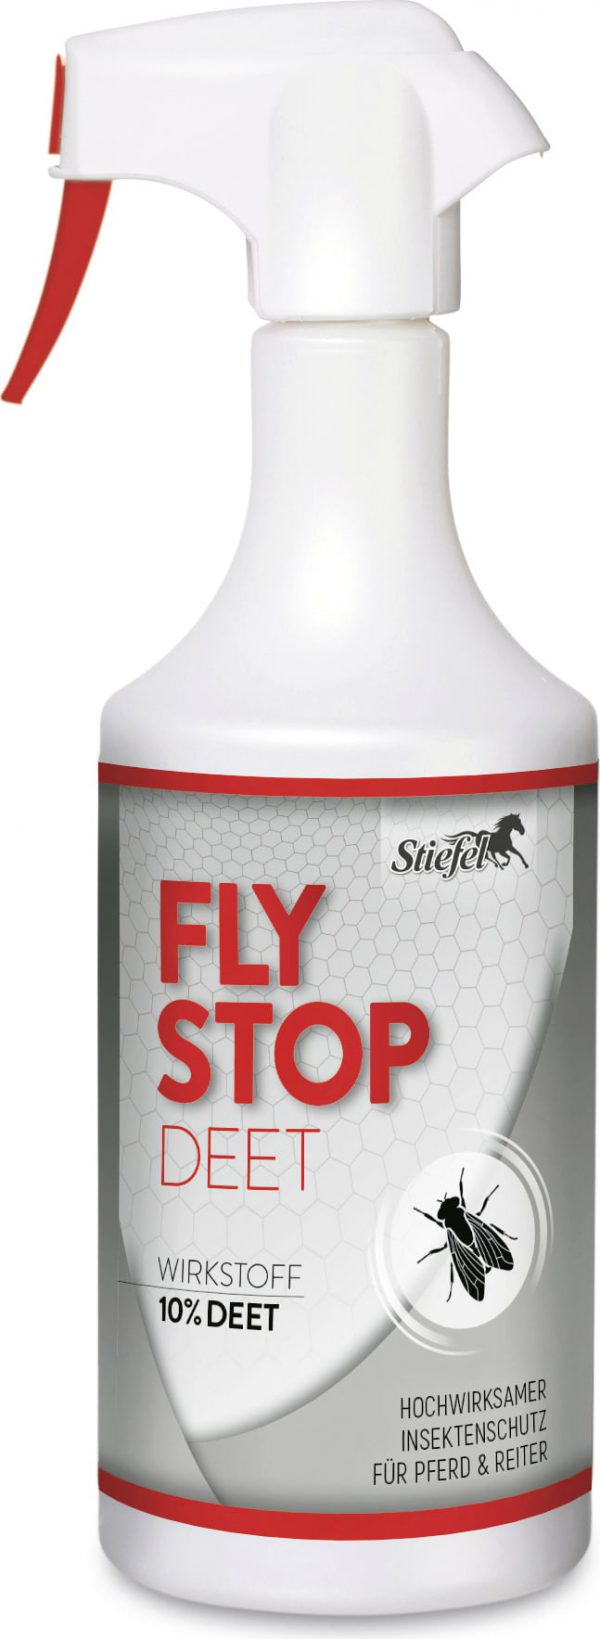 stiefel-fly-stop-deet-650-ml-2667-de.jpg